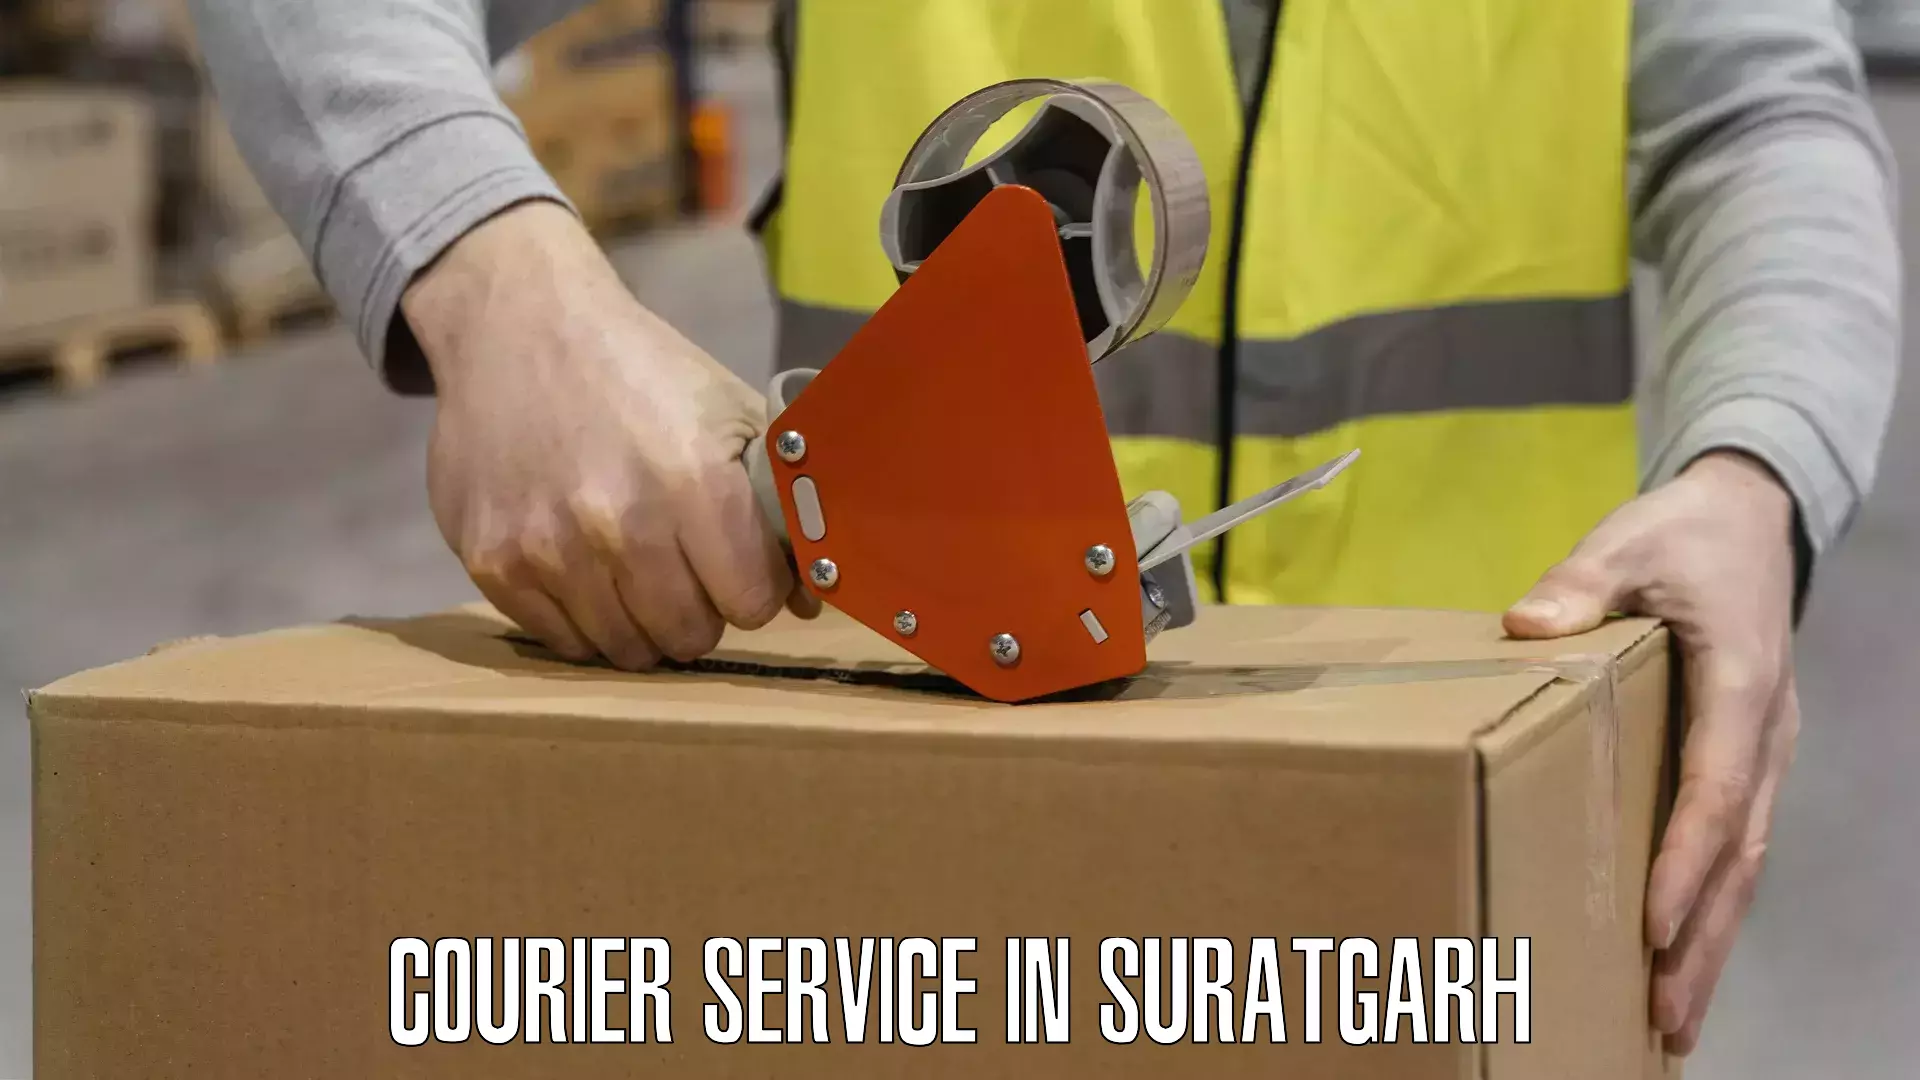 Reliable logistics providers in Suratgarh